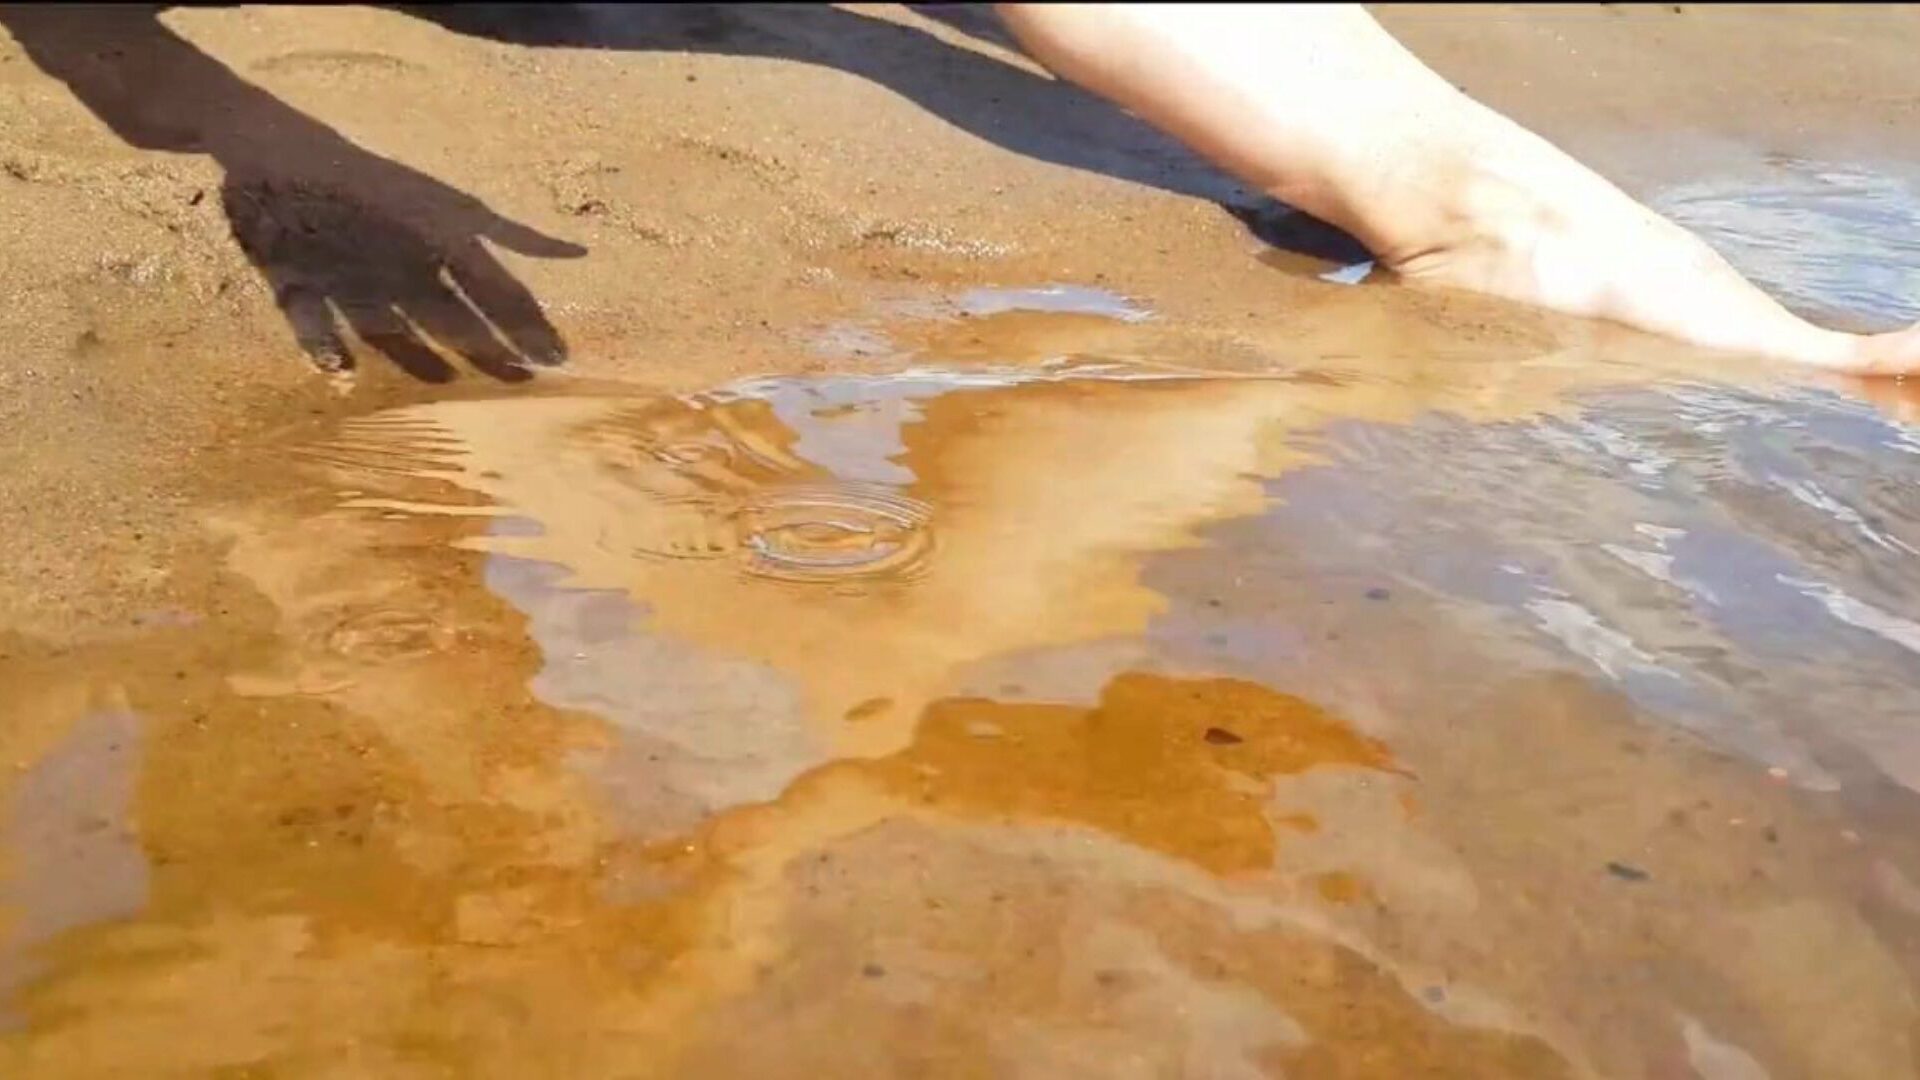 tenåring fingering på en offentlig strand og får en virkelig kul orgasme - stram fitte playskitty ultra hd 4k